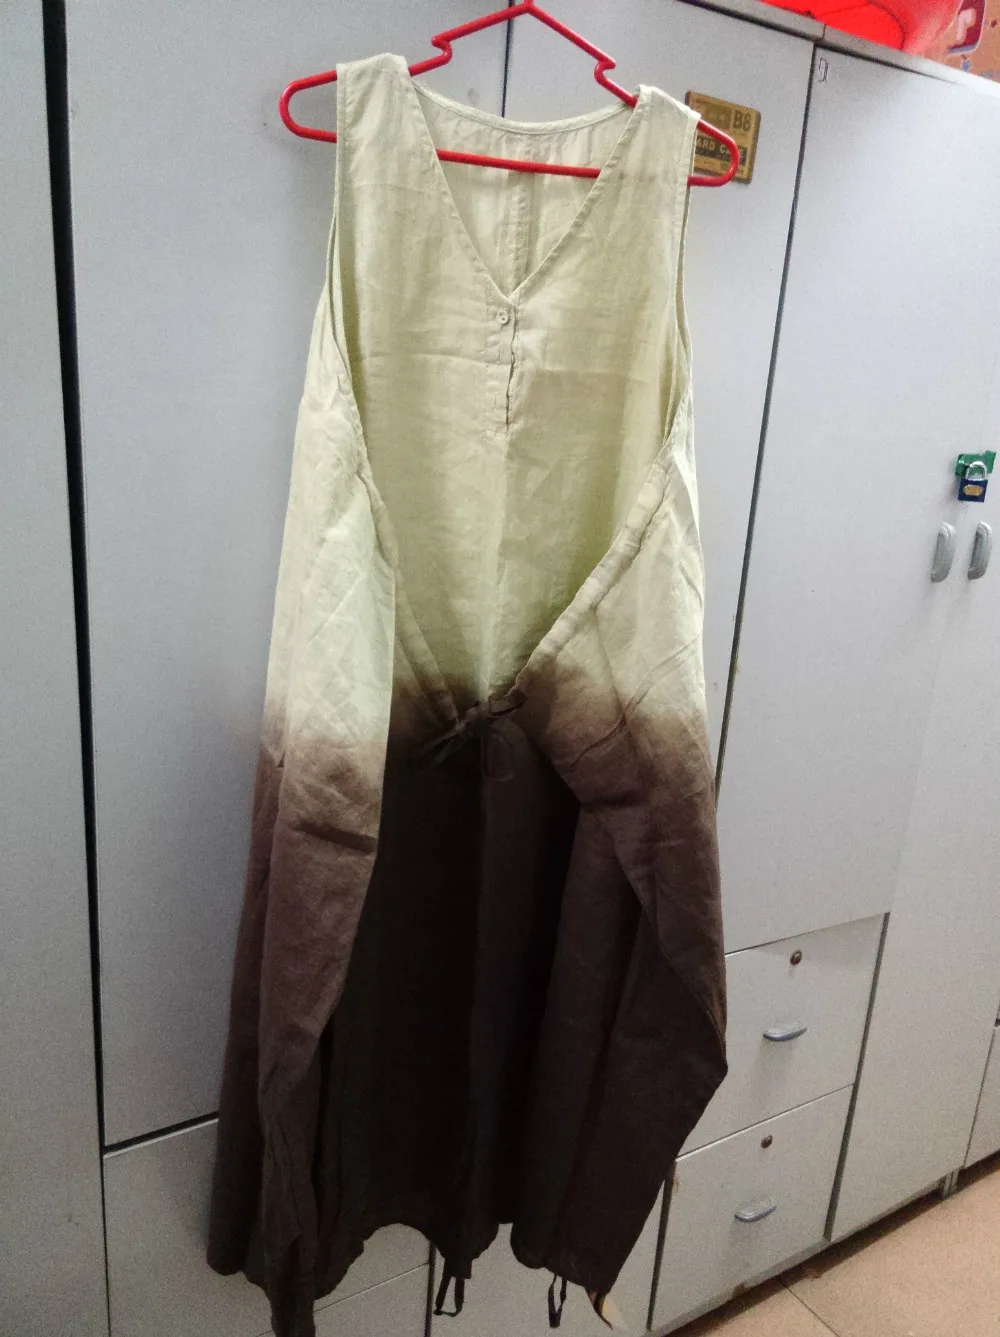 Ультра-свободное асимметричное градиентное платье без рукавов с v-образным вырезом